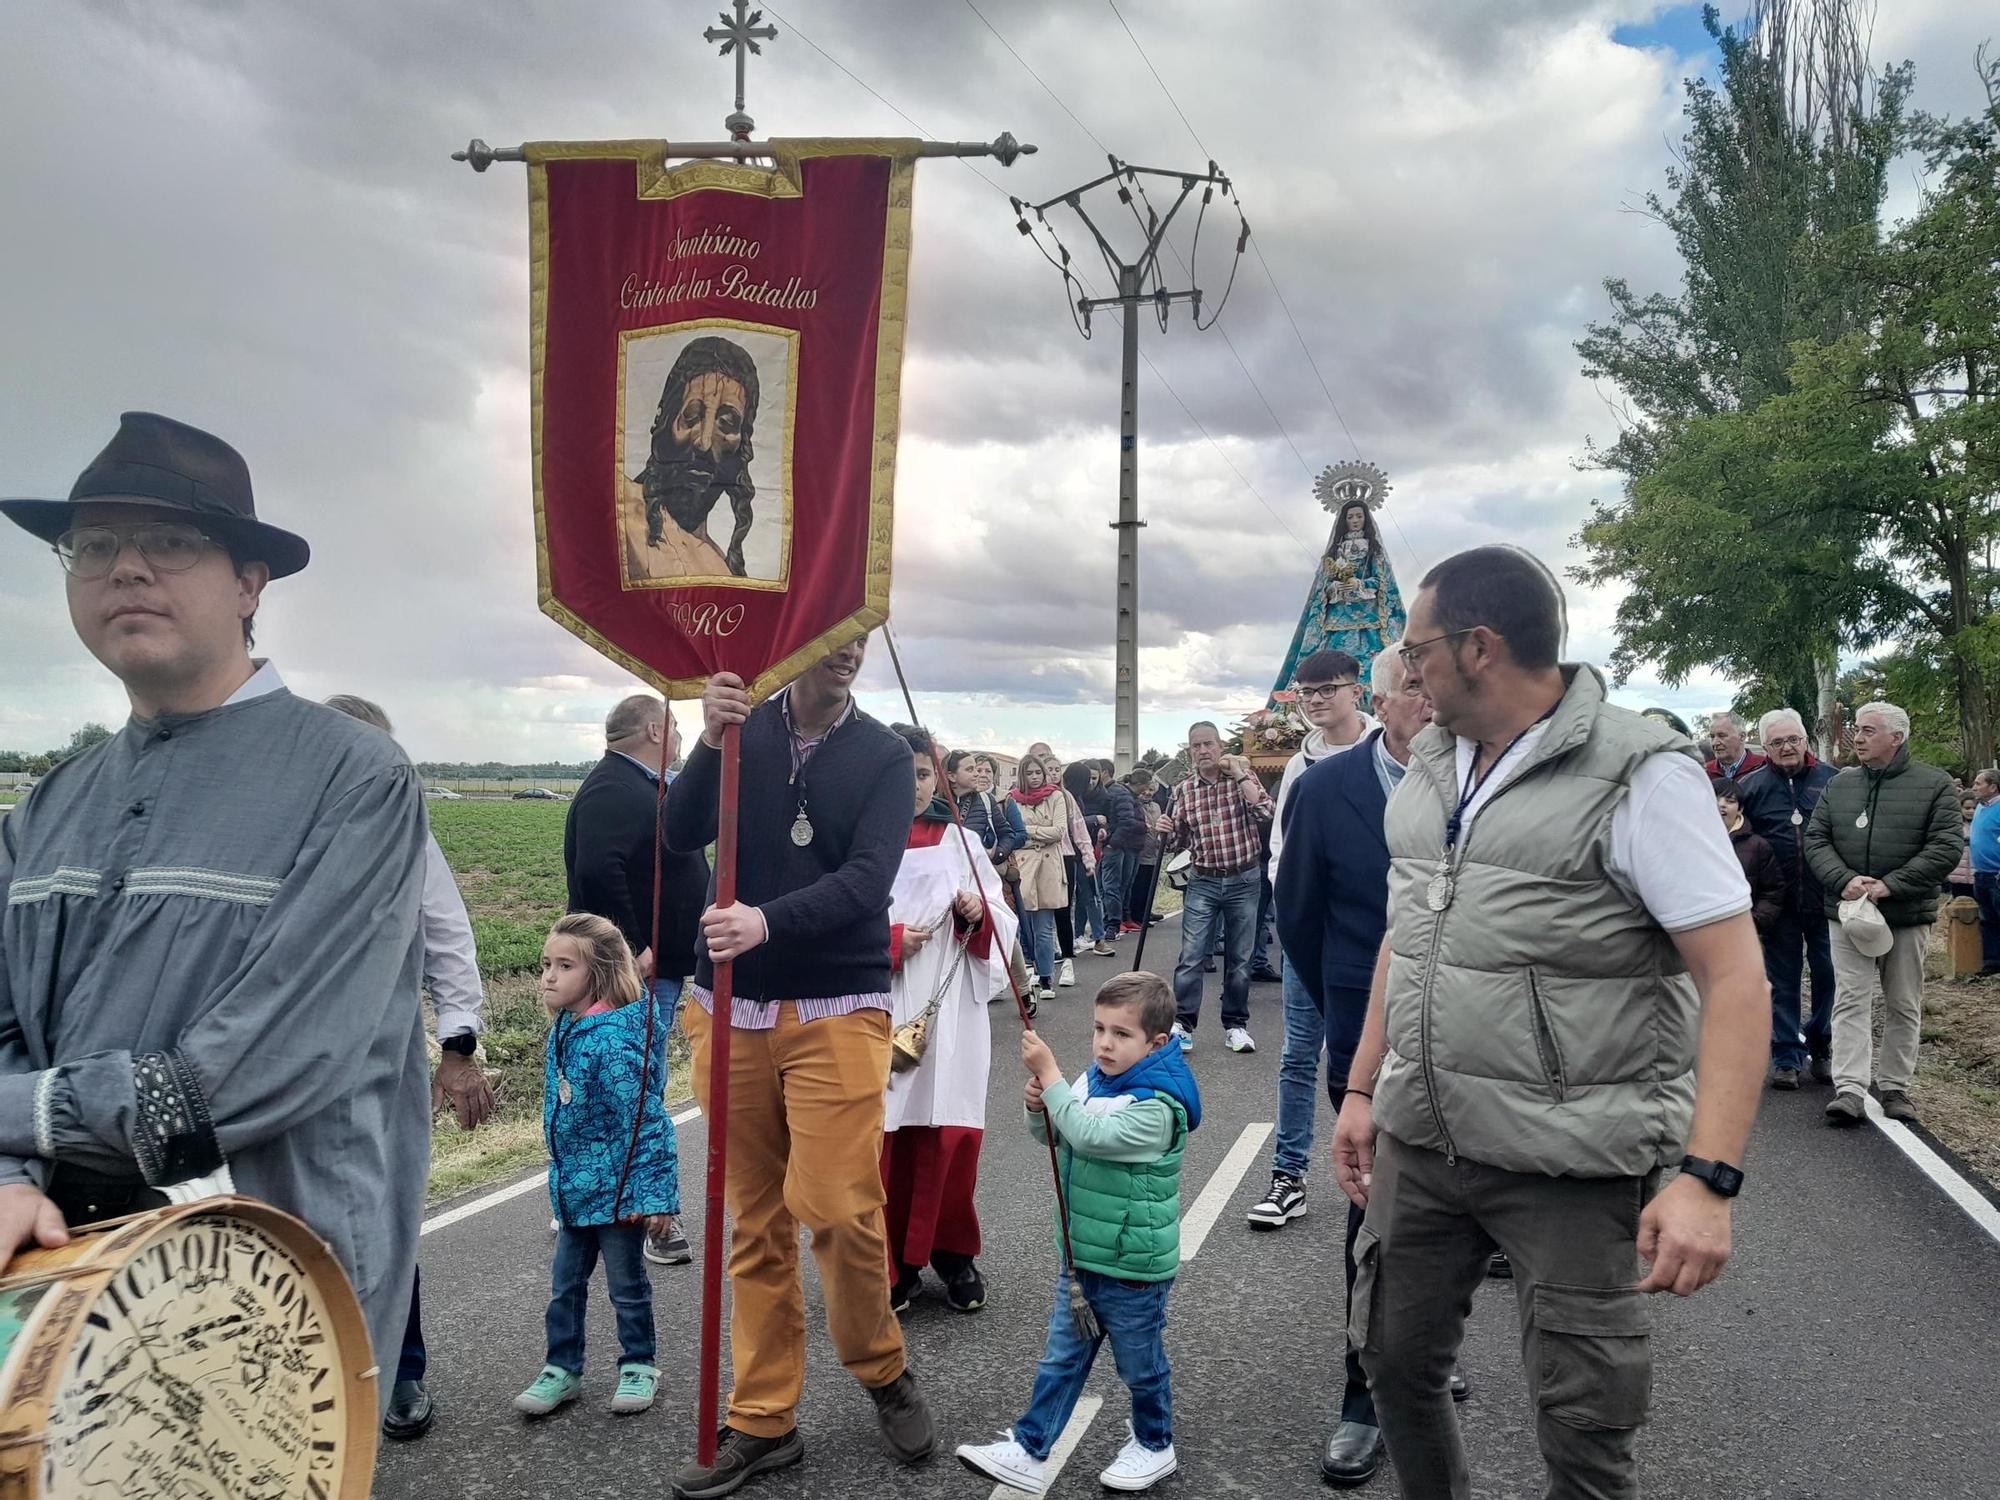 GALERÍA | Toro celebra la romería del Cristo de las Batallas y desafía a la lluvia